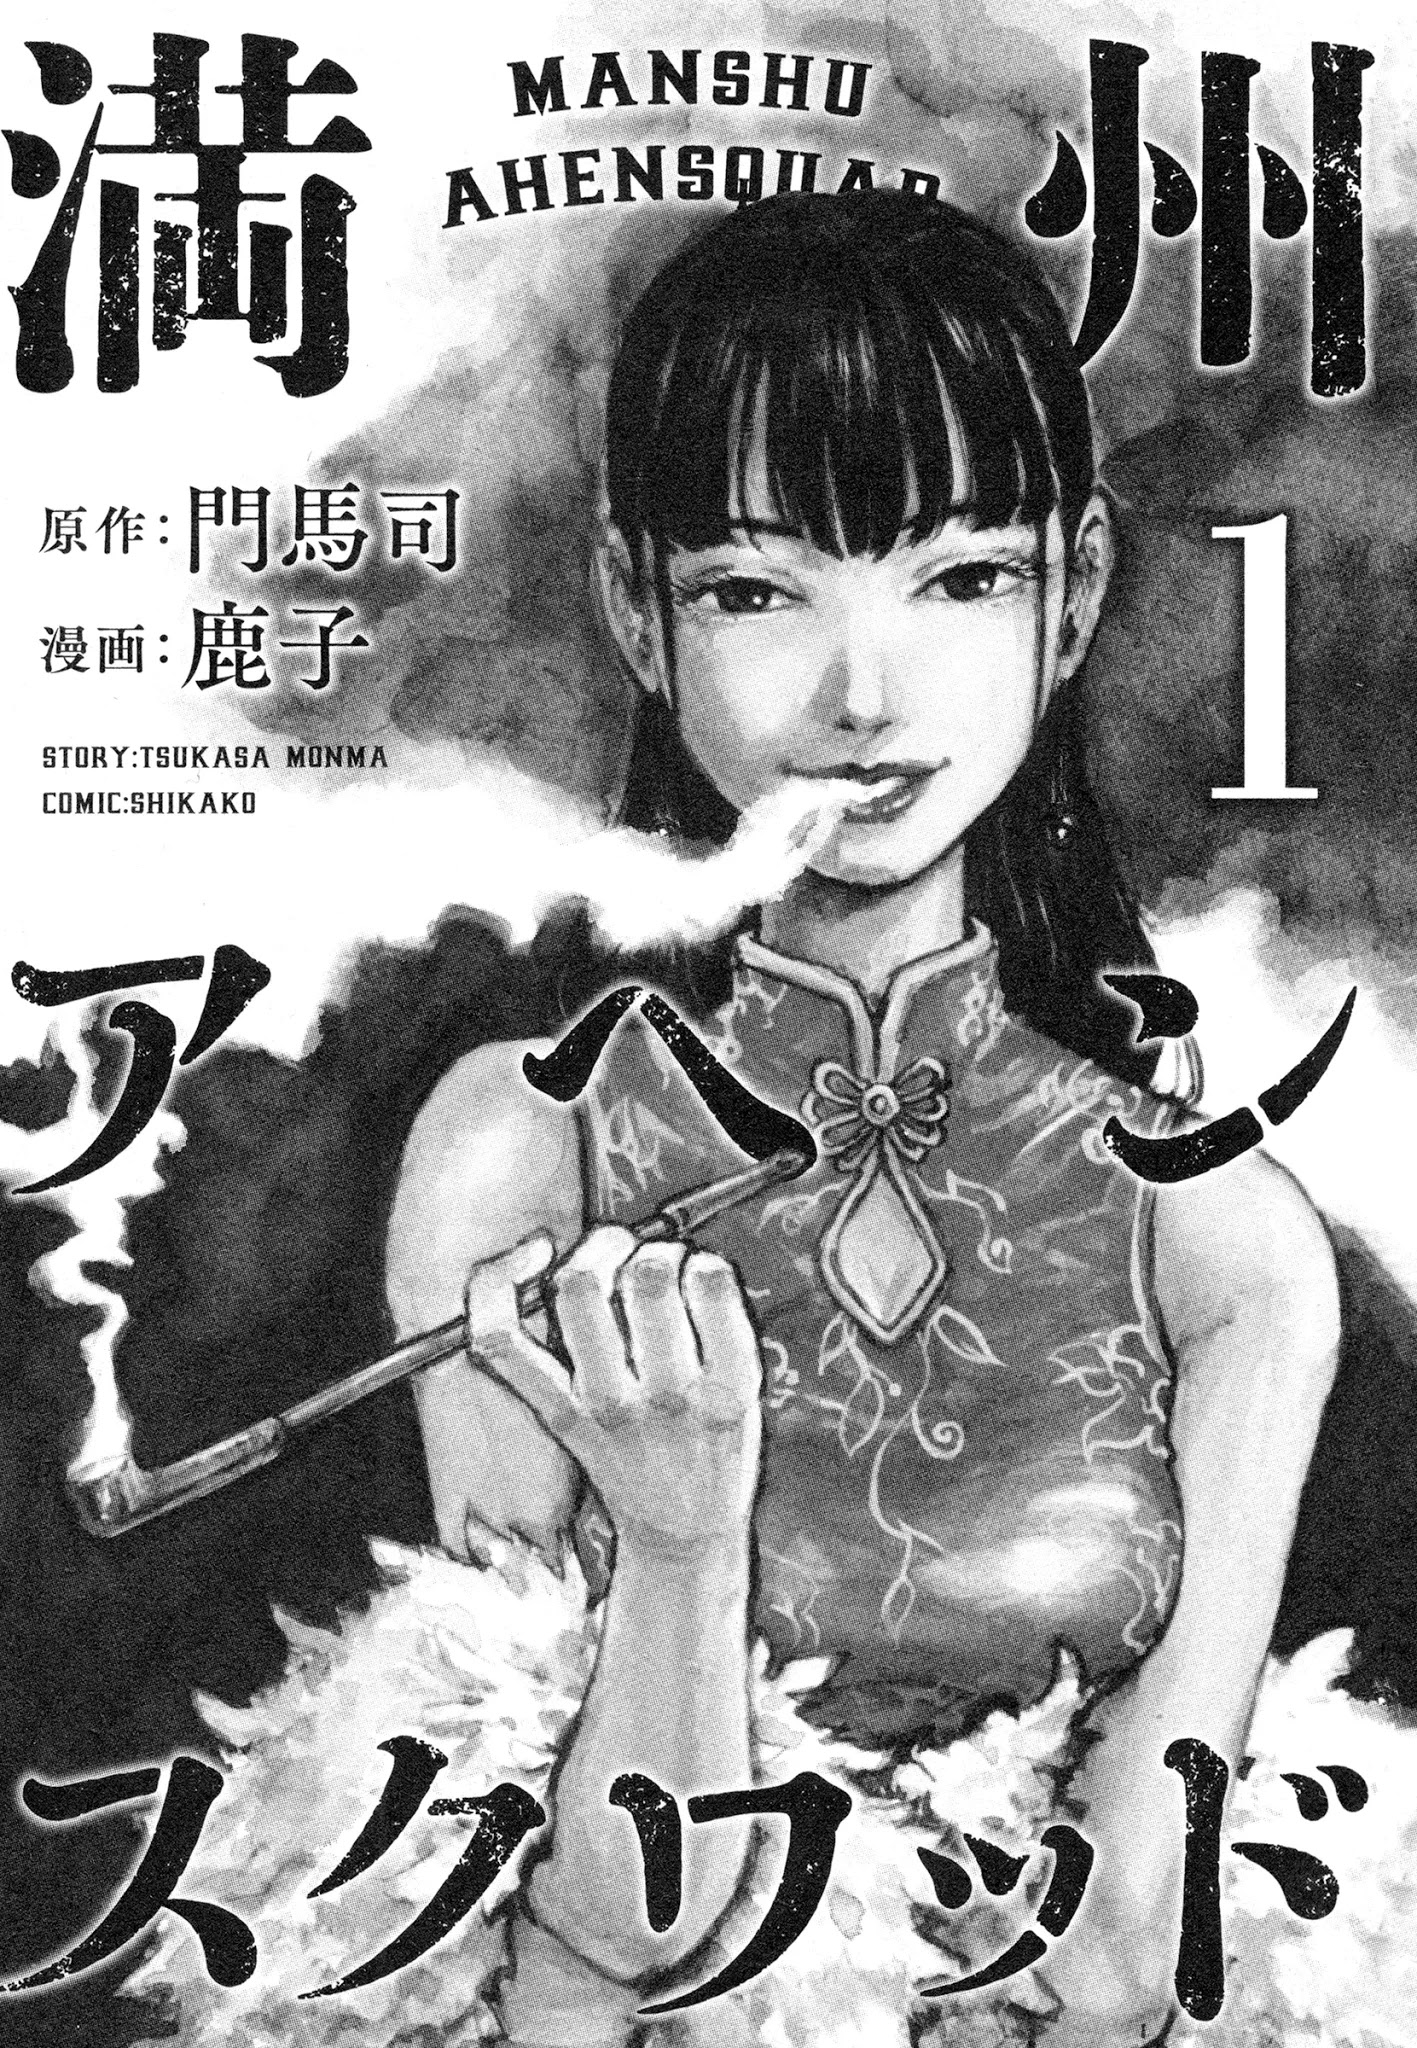 3 Manchuria opium squad, critique du volume 1 : la fleur du mal